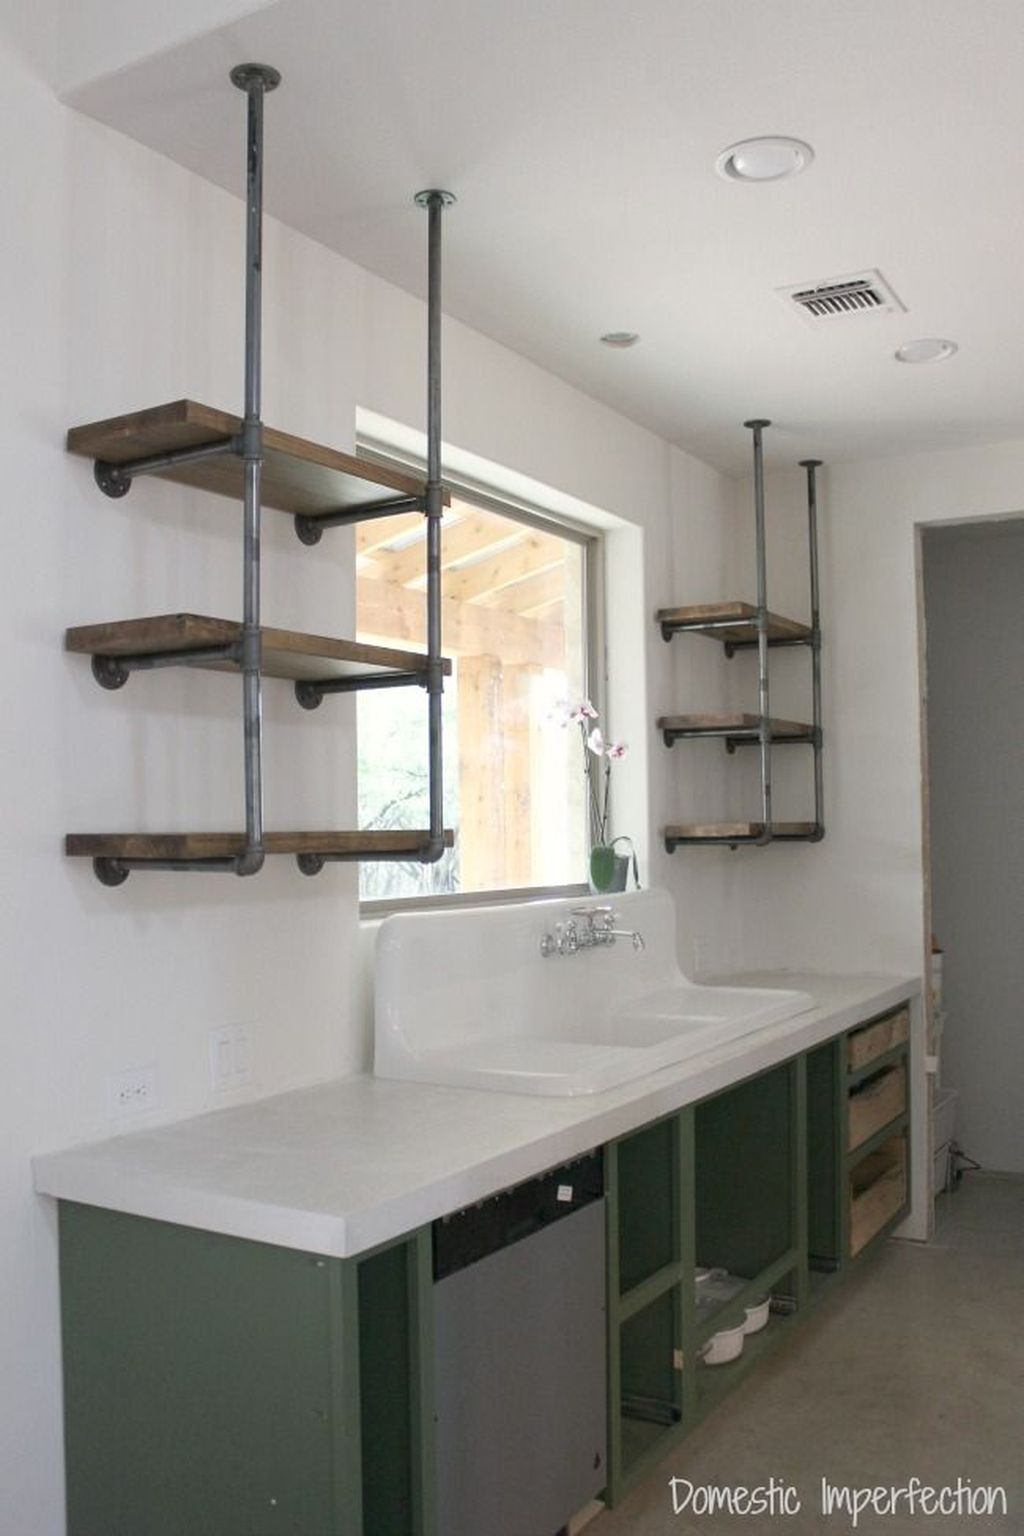 Wonderful Industrial Kitchen Shelf Design Ideas To Organize Your Kitchen24